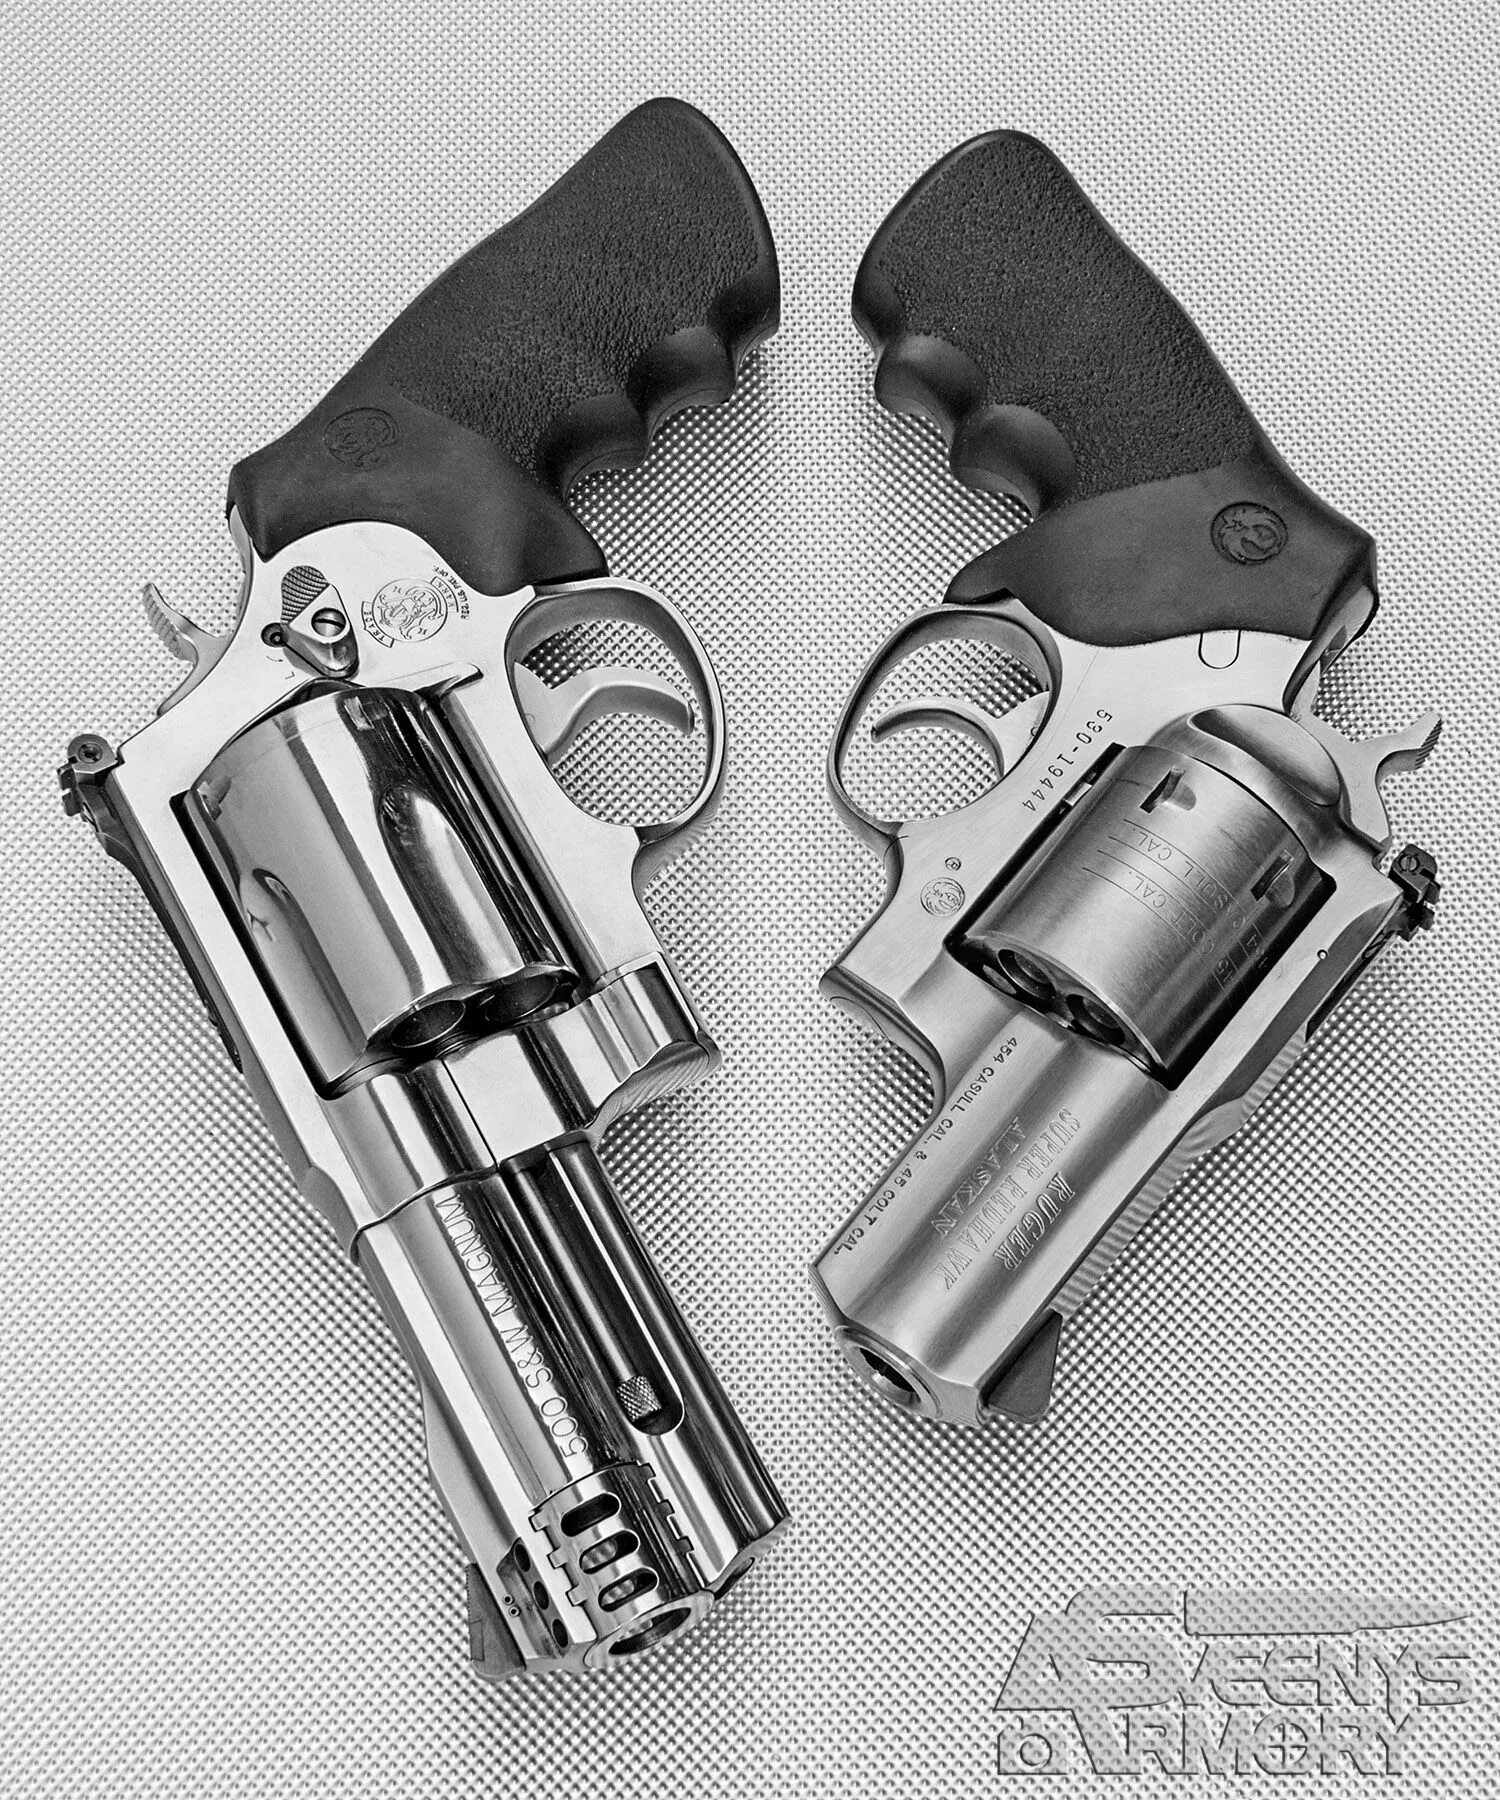 Револьвер 500. Смит-Вессон 500 Магнум. Револьвер Magnum 500 s&w. SW 500 Magnum. Smith & Wesson .500 s&w Magnum.